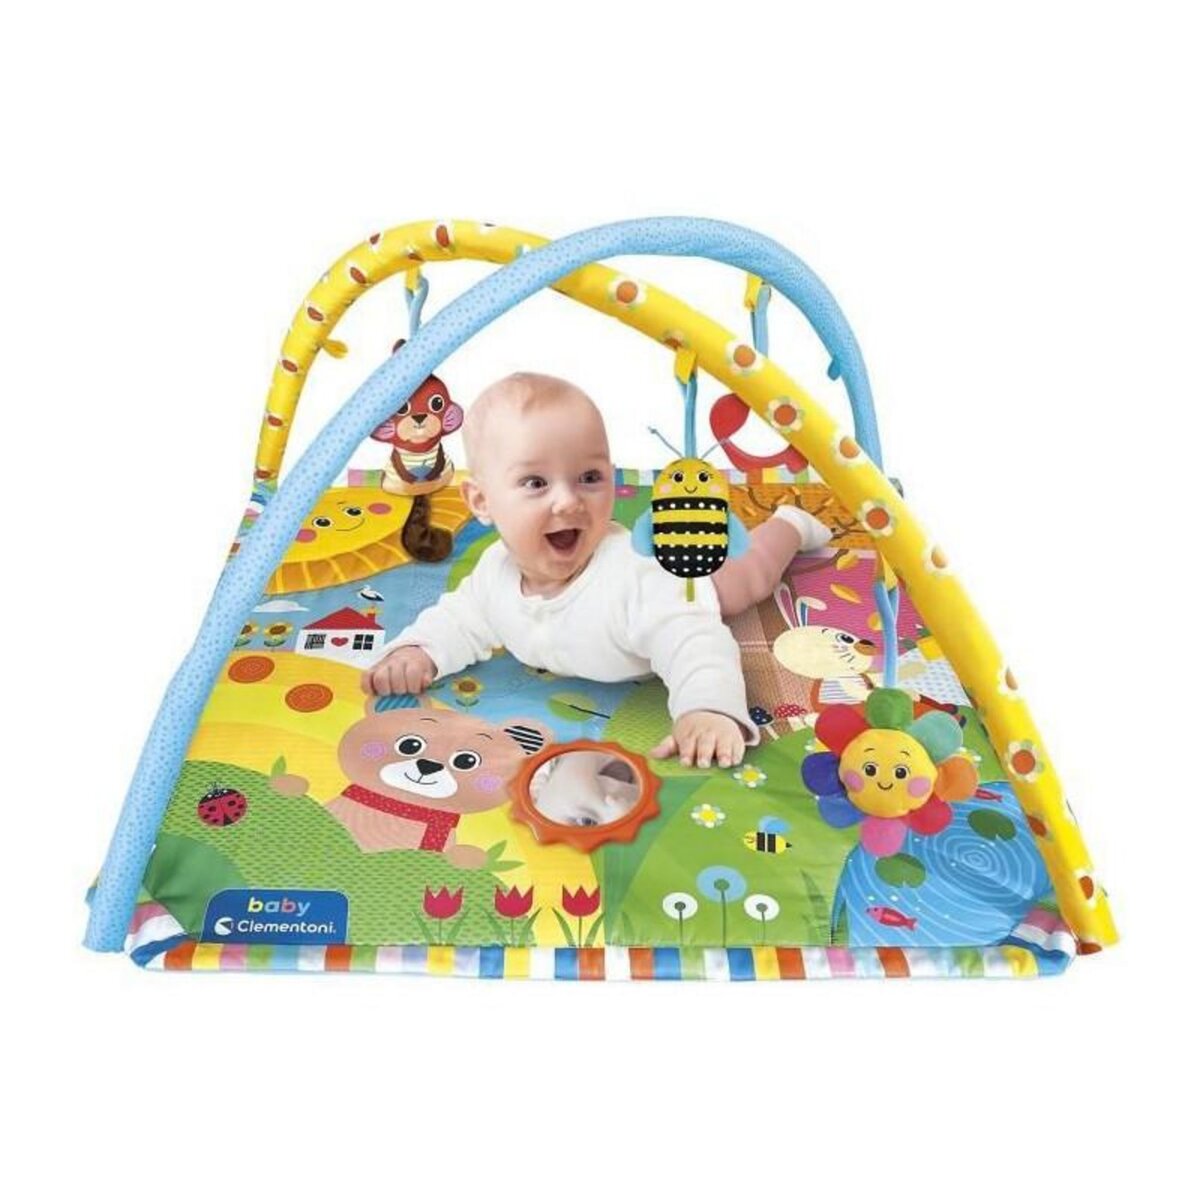  Baby Clementoni - Tapis, arches et projecteur - Baby Projector Activity Gym - Tapis d'éveil